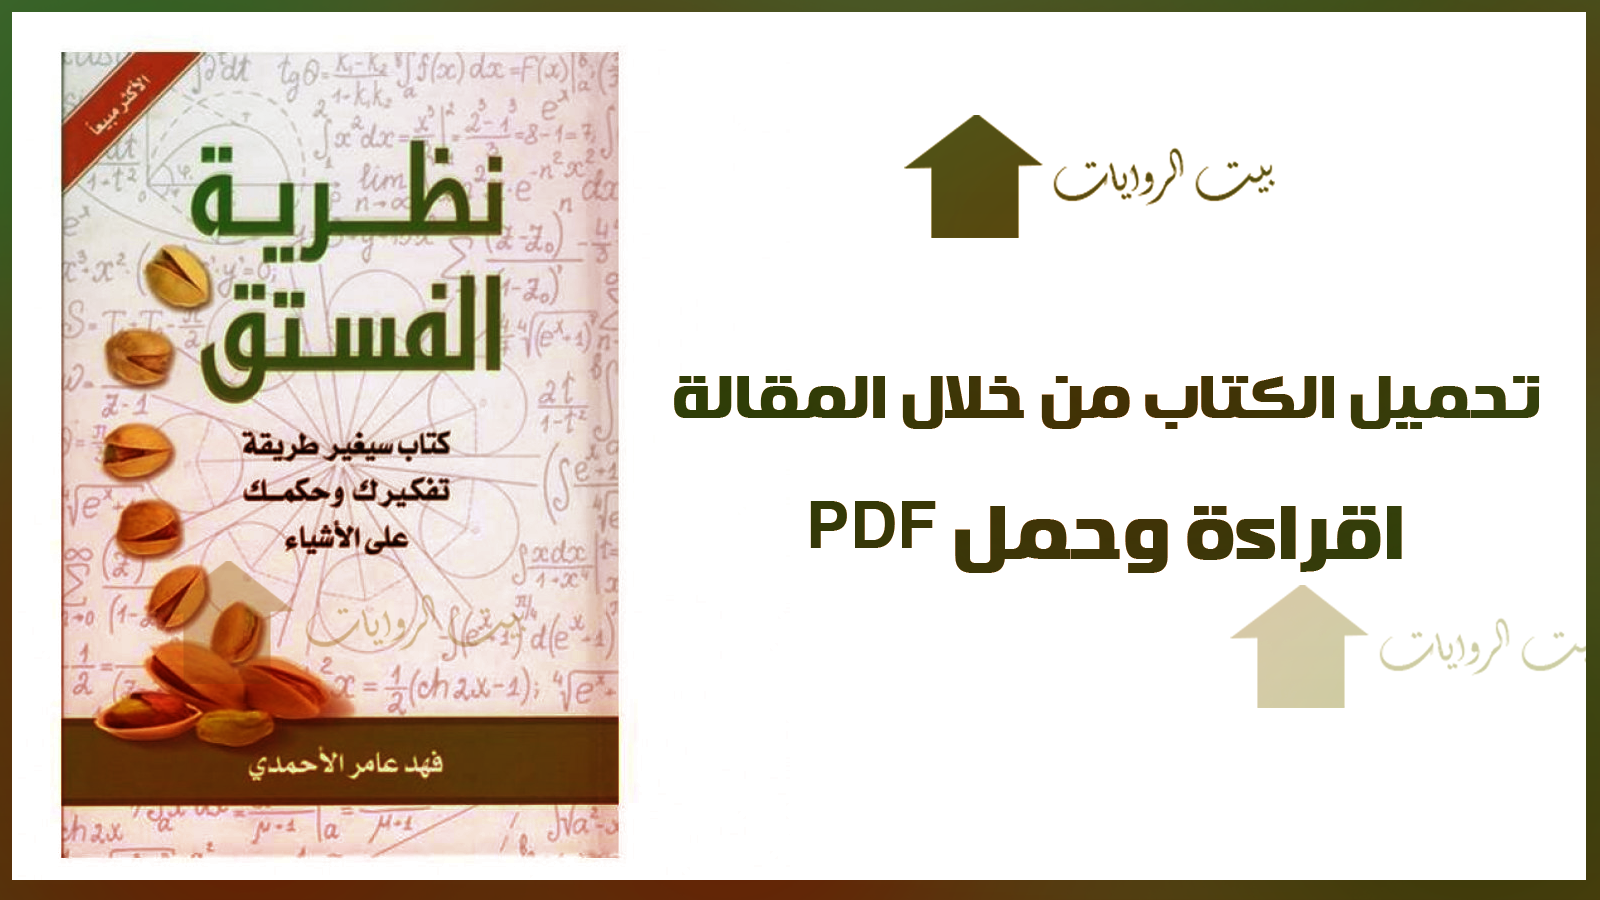 تحميل كتاب نظرية الفستق pdf - فهد عامر الأحمدي - بيت الروايات PDF